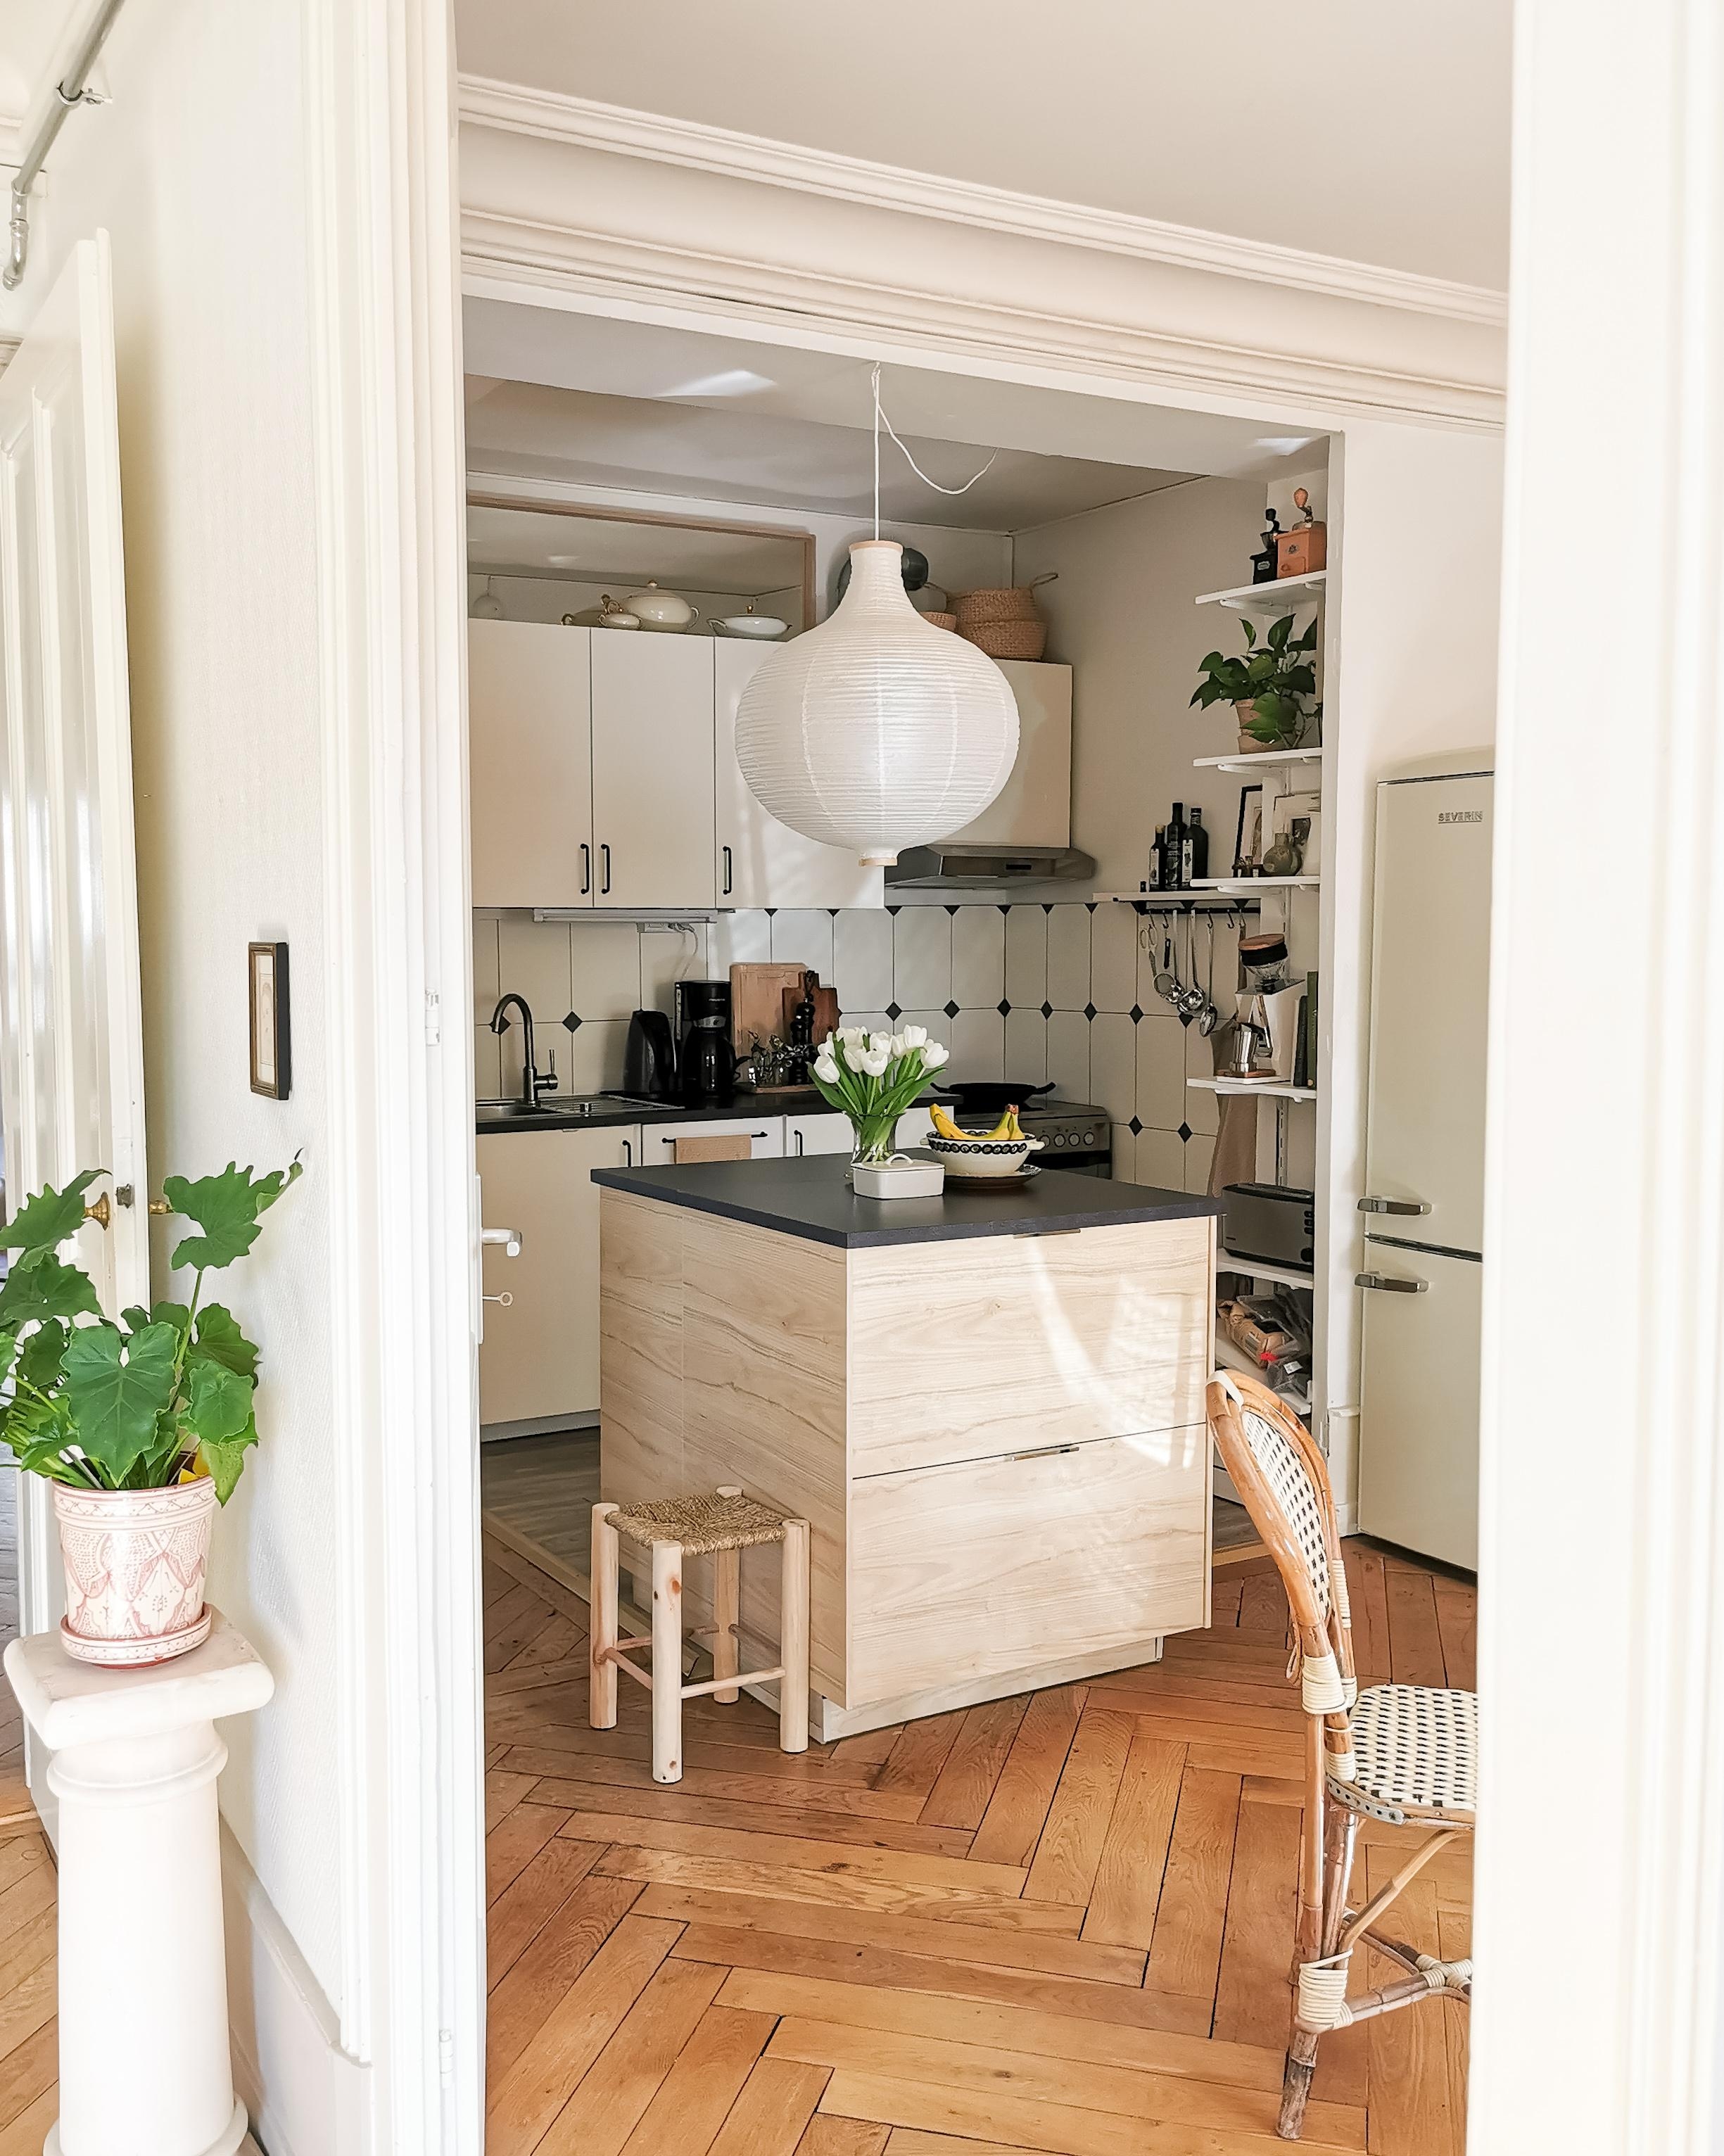 Unsere Küche nach 8 Monaten in der neuen Wohnung 🙂🤍🌿 #küche #kücheninsel #klebefliesen #spiegel #küchenideen 